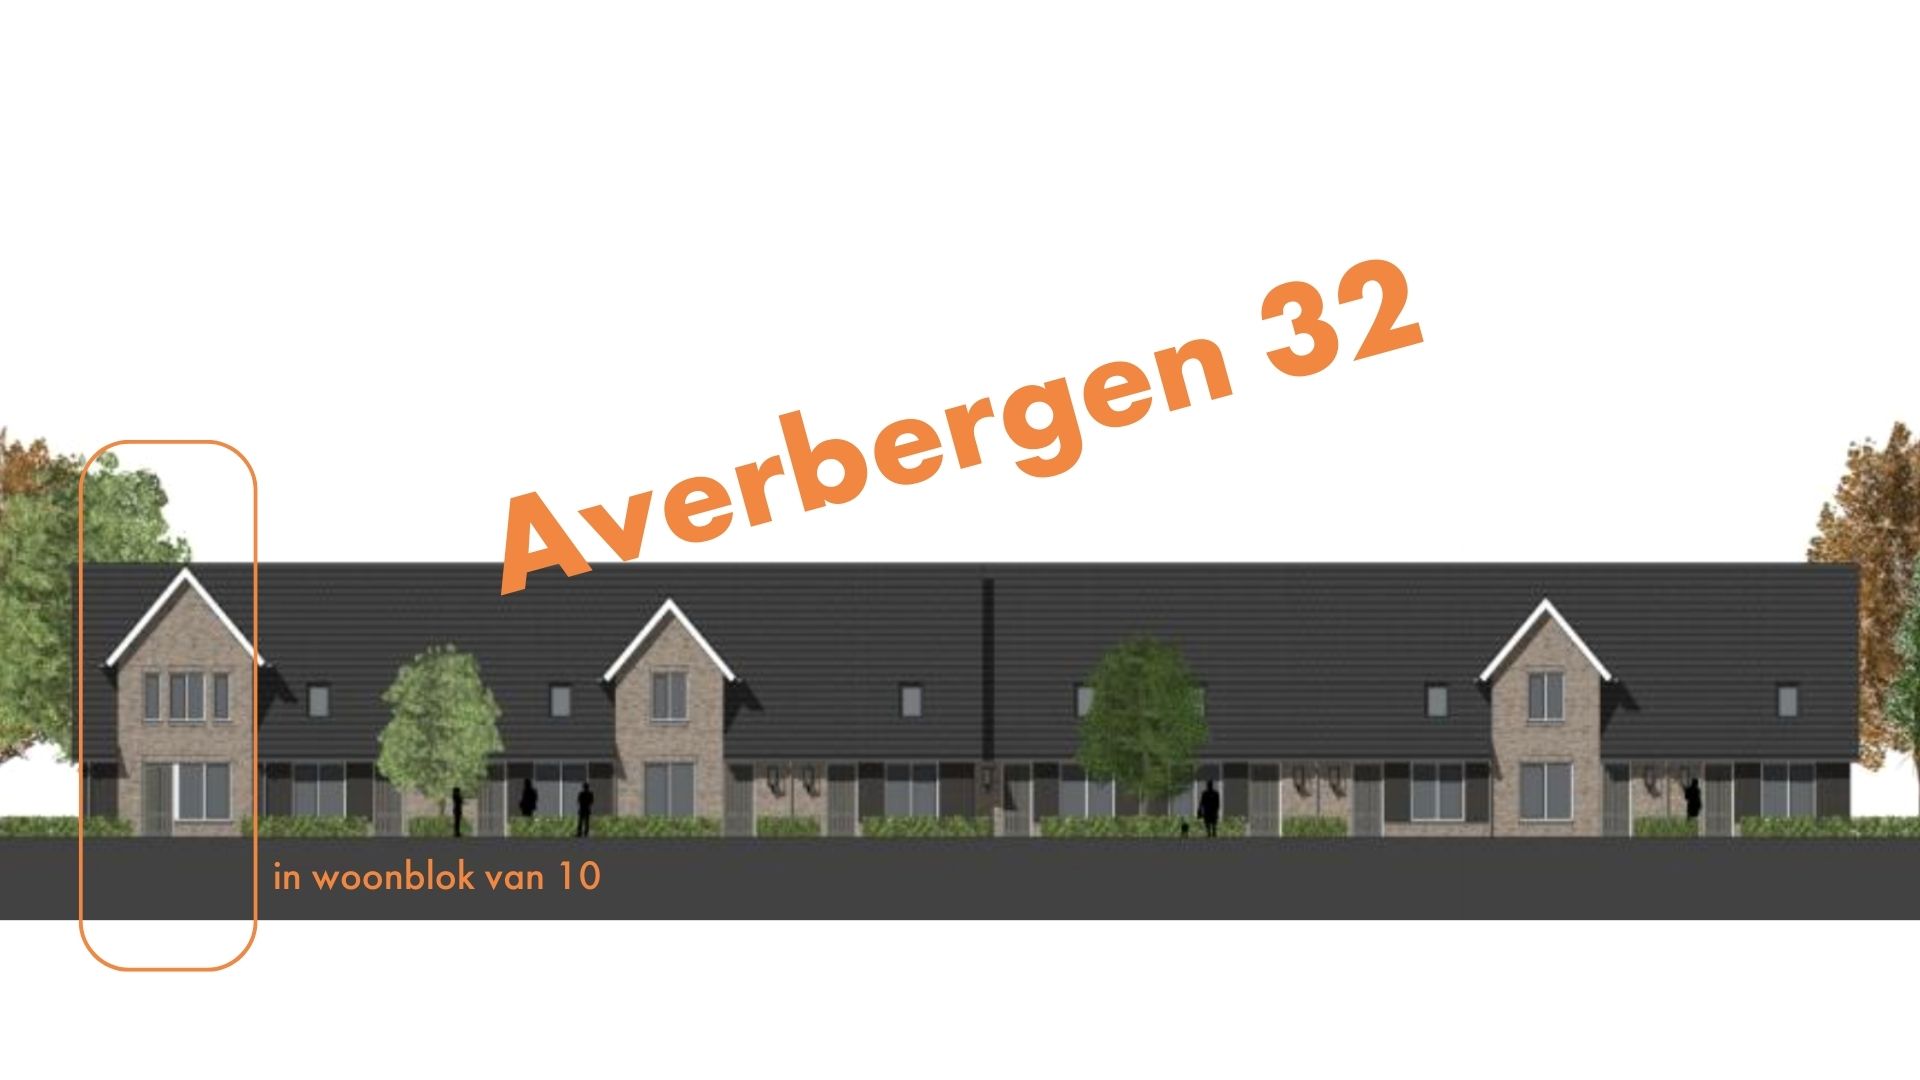 Averbergen 32